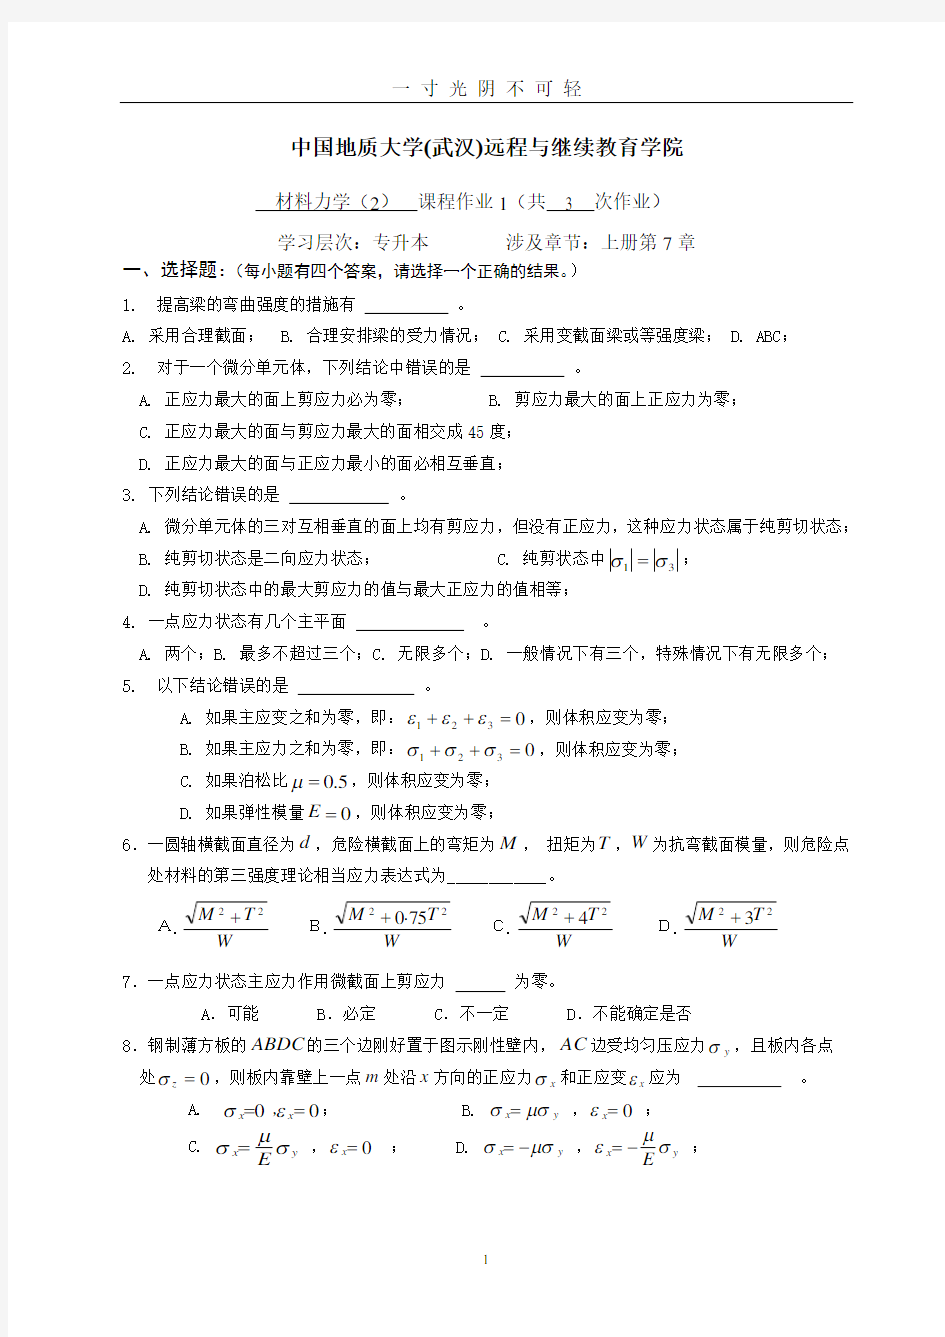 材料力学(2)阶段性作业11.doc